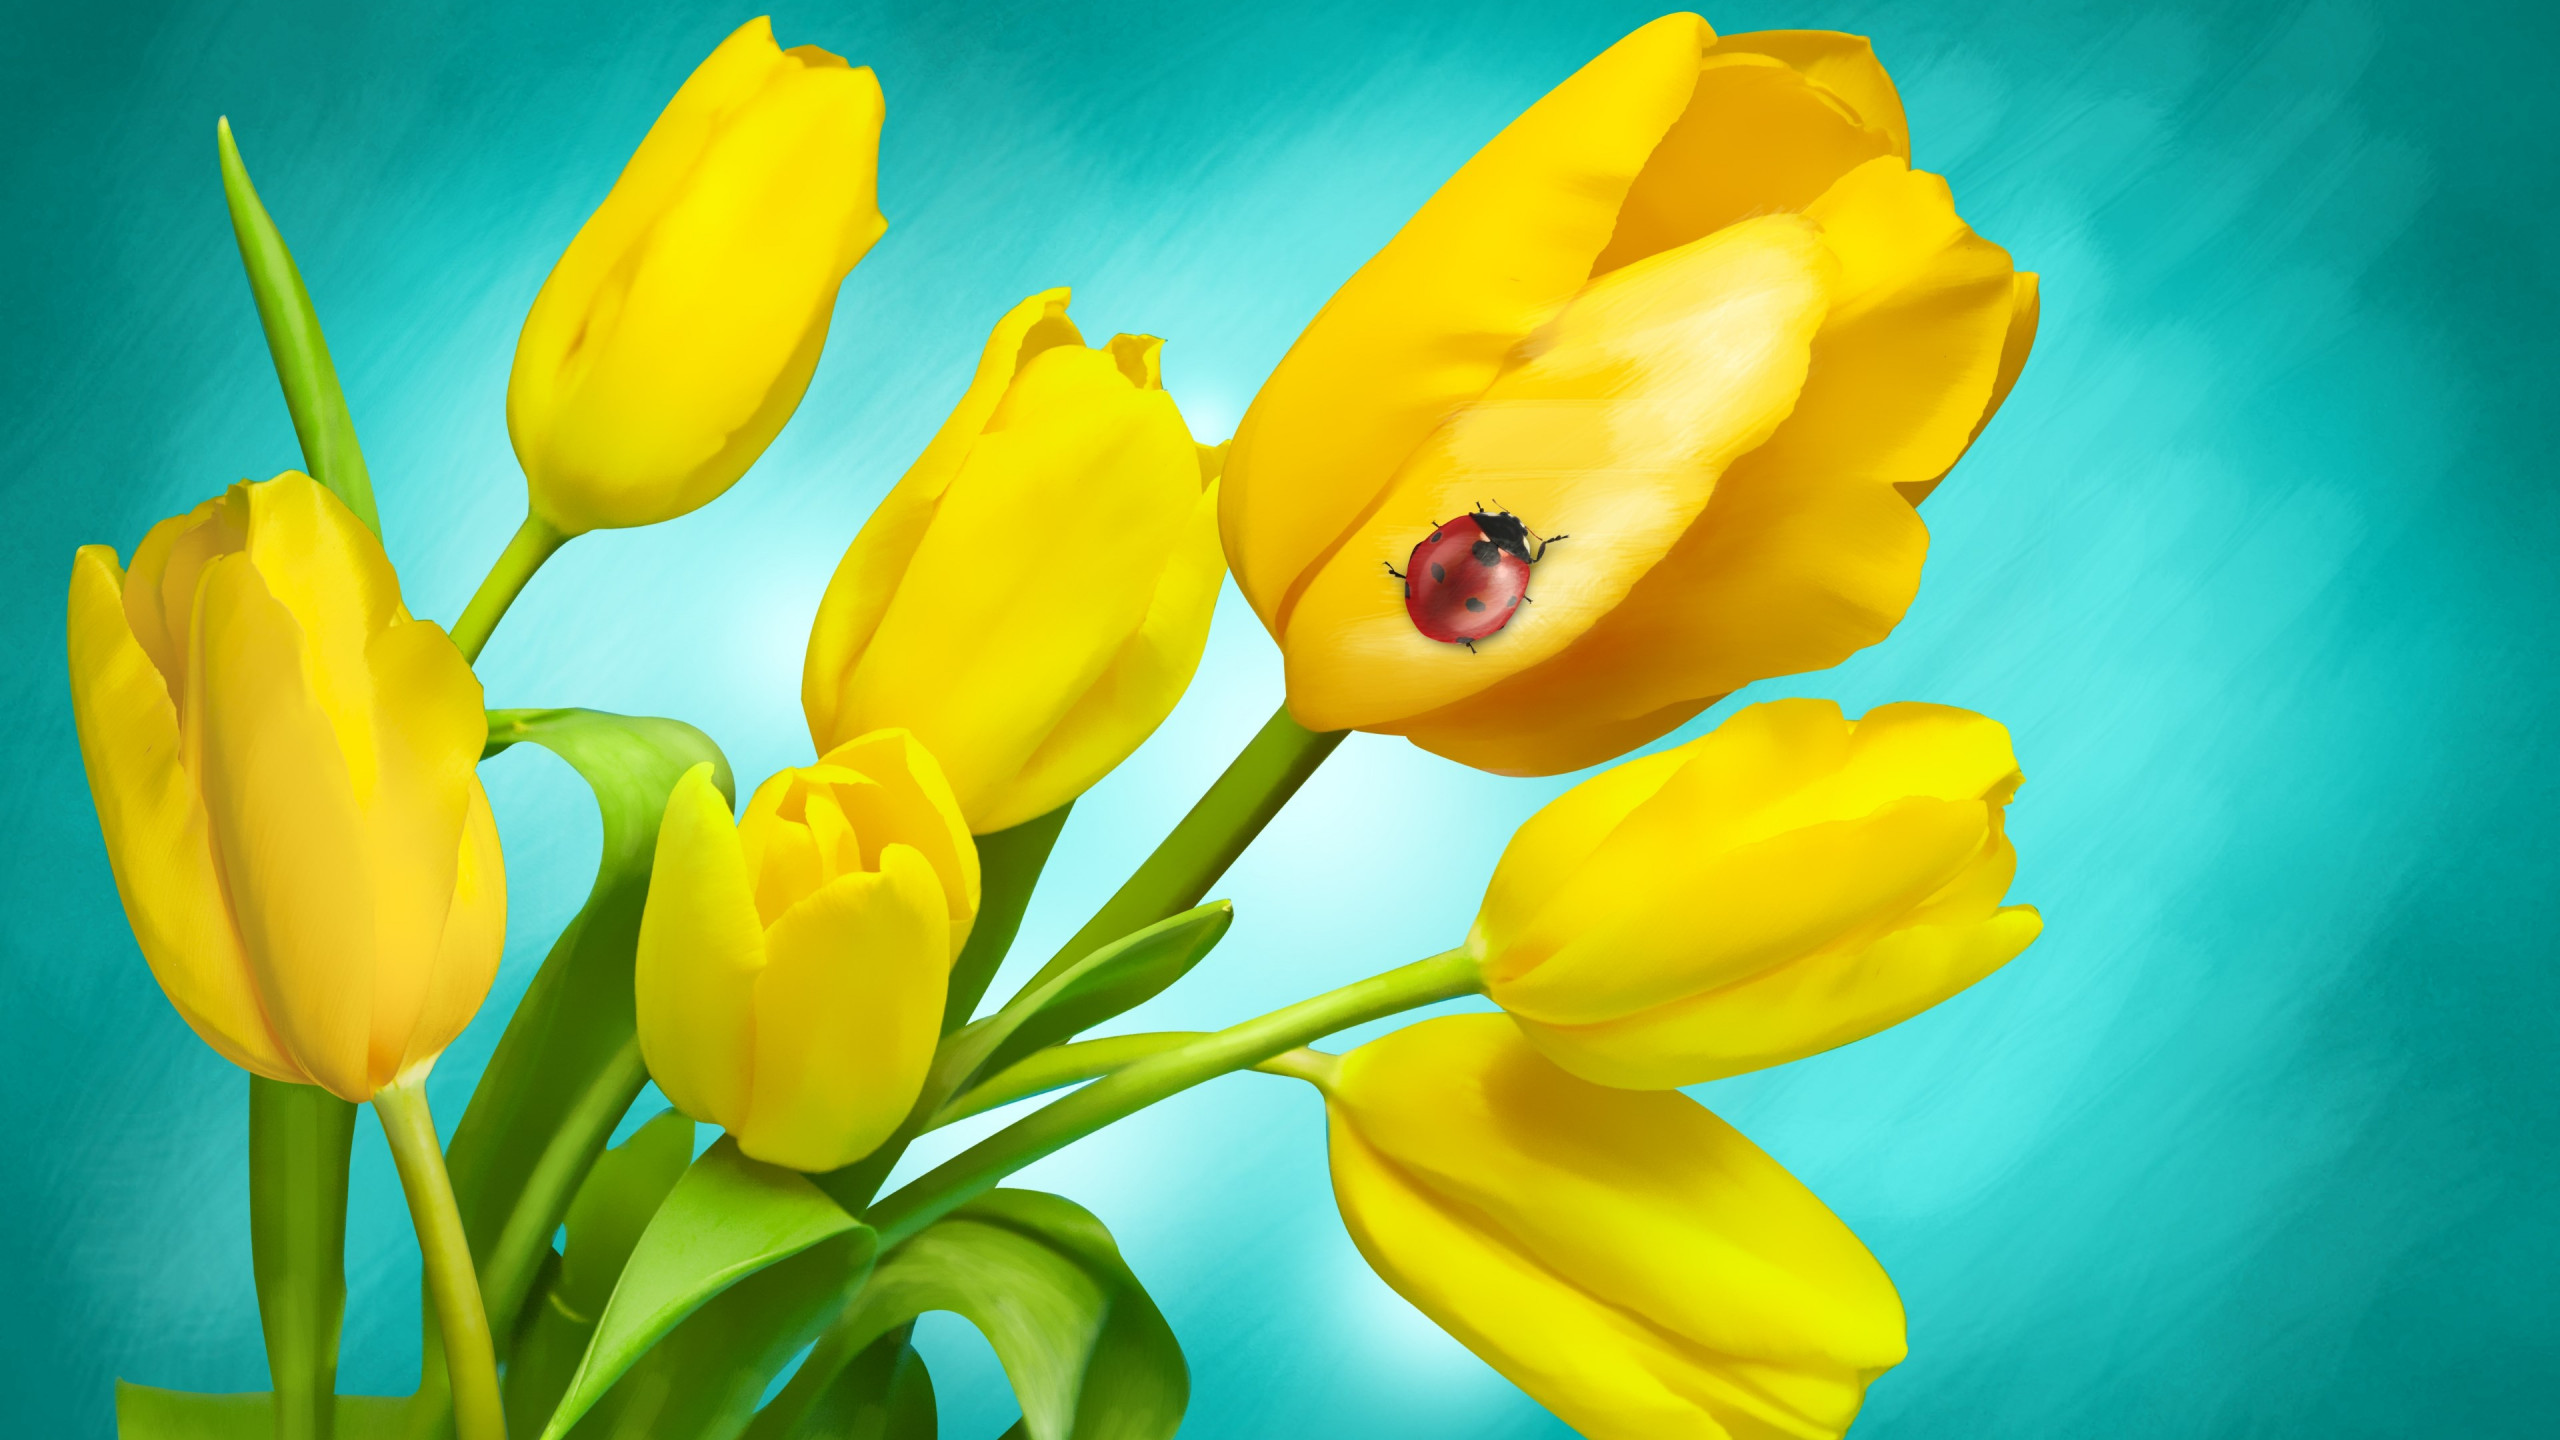 Ladybird on yellow tulips wallpaper 2560x1440